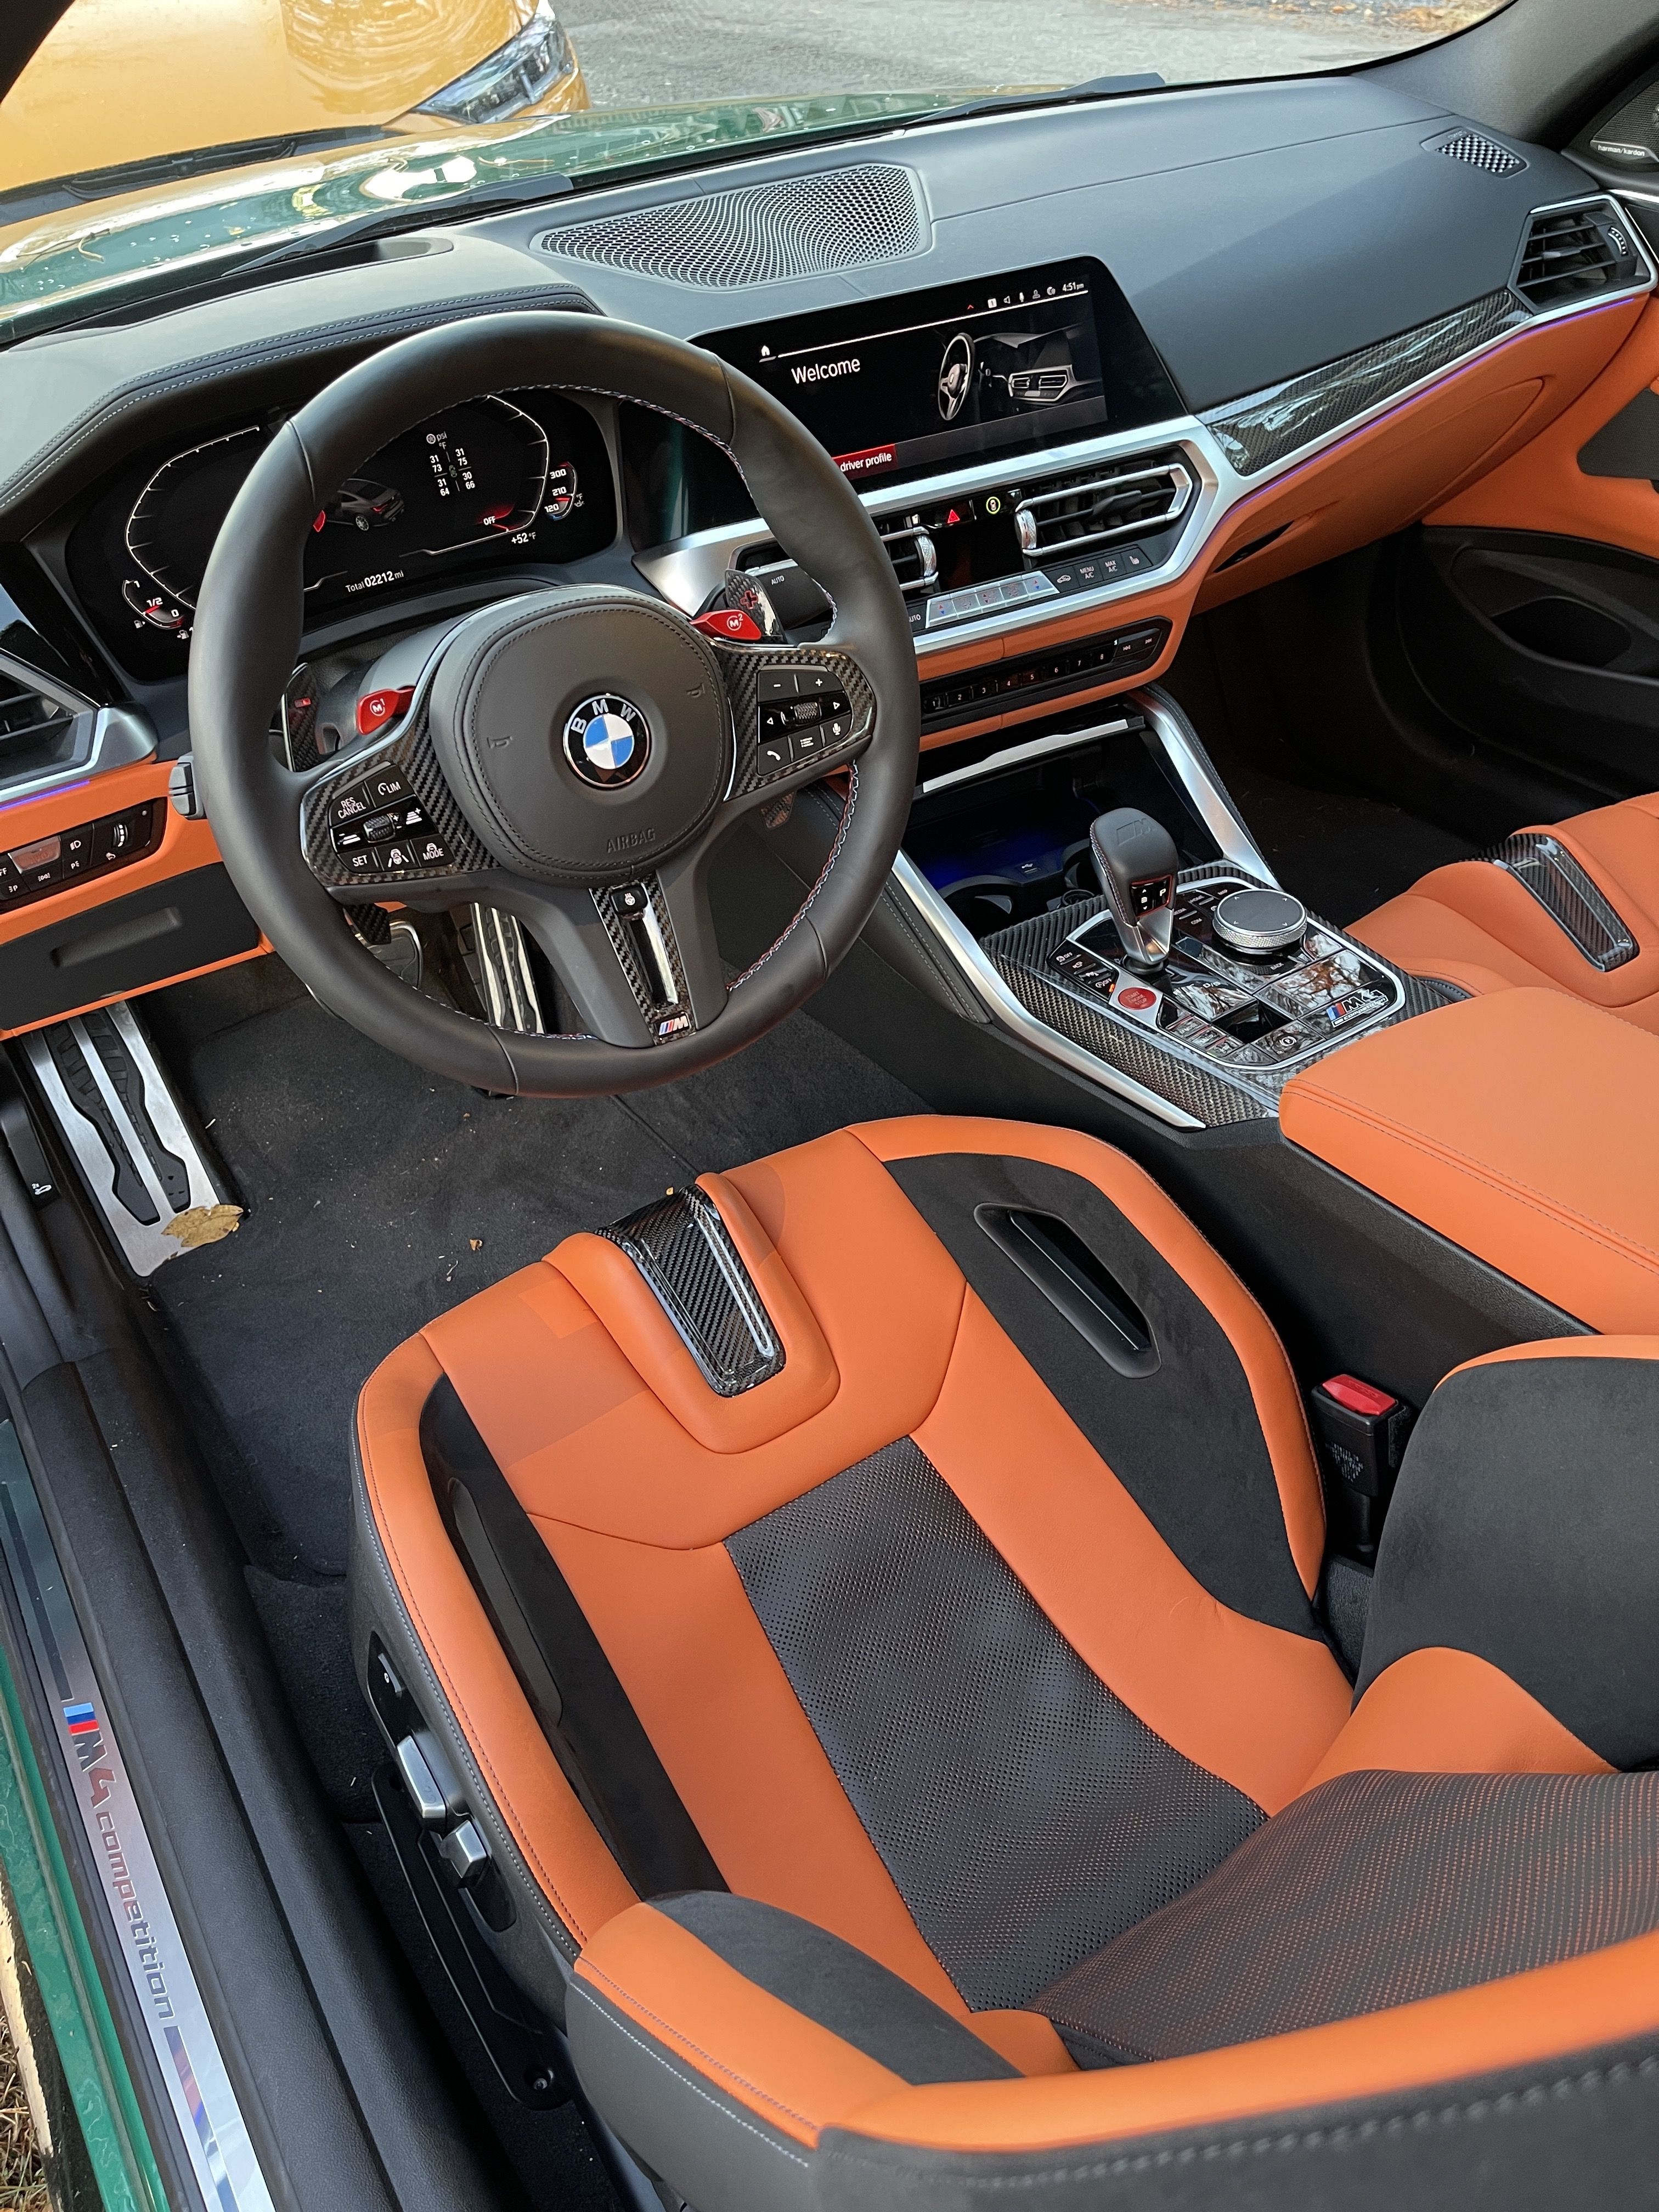 Guide: BMW E36 M3 3.0 — Supercar Nostalgia